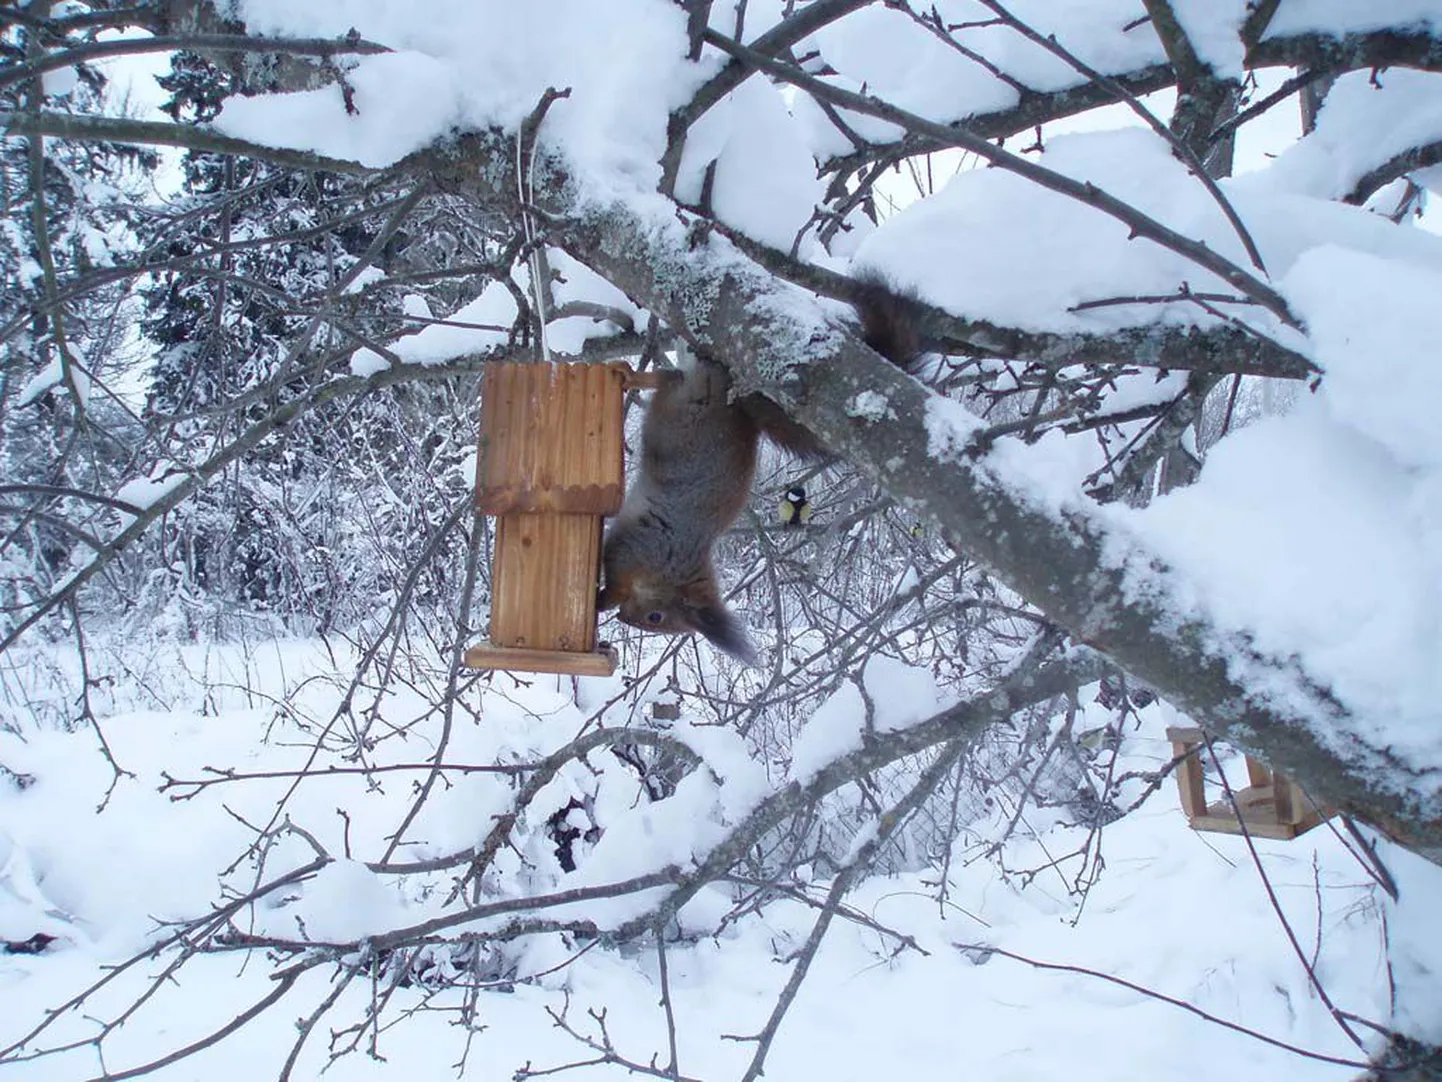 Koheva sabaga orav revideerib lindude toidulauda.